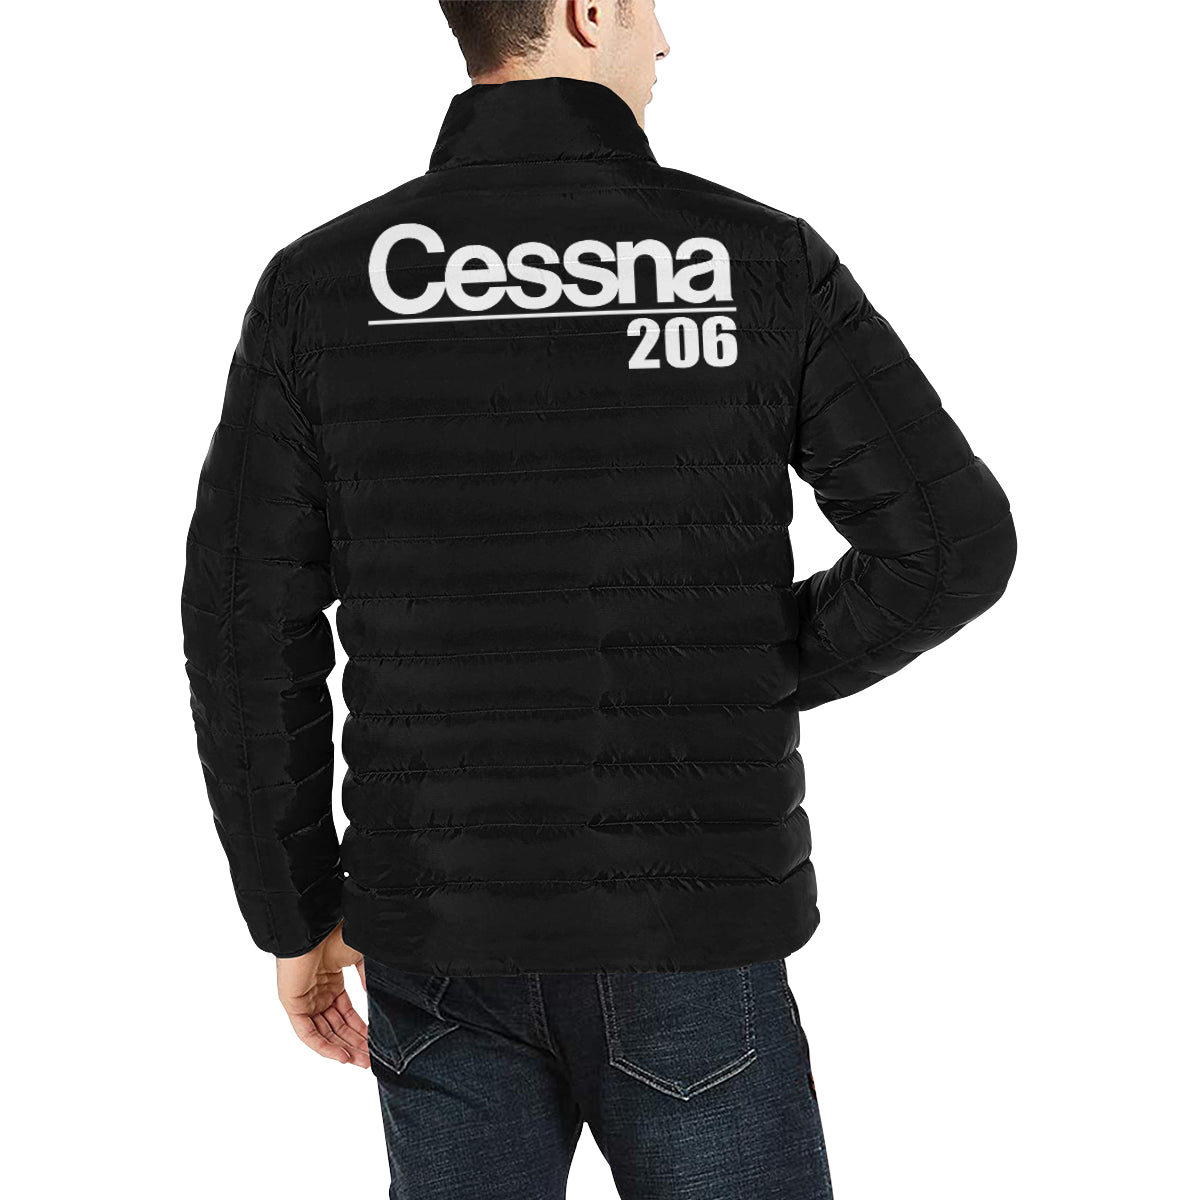 CESSNA 206 Men's Stand Collar Padded Jacket e-joyer